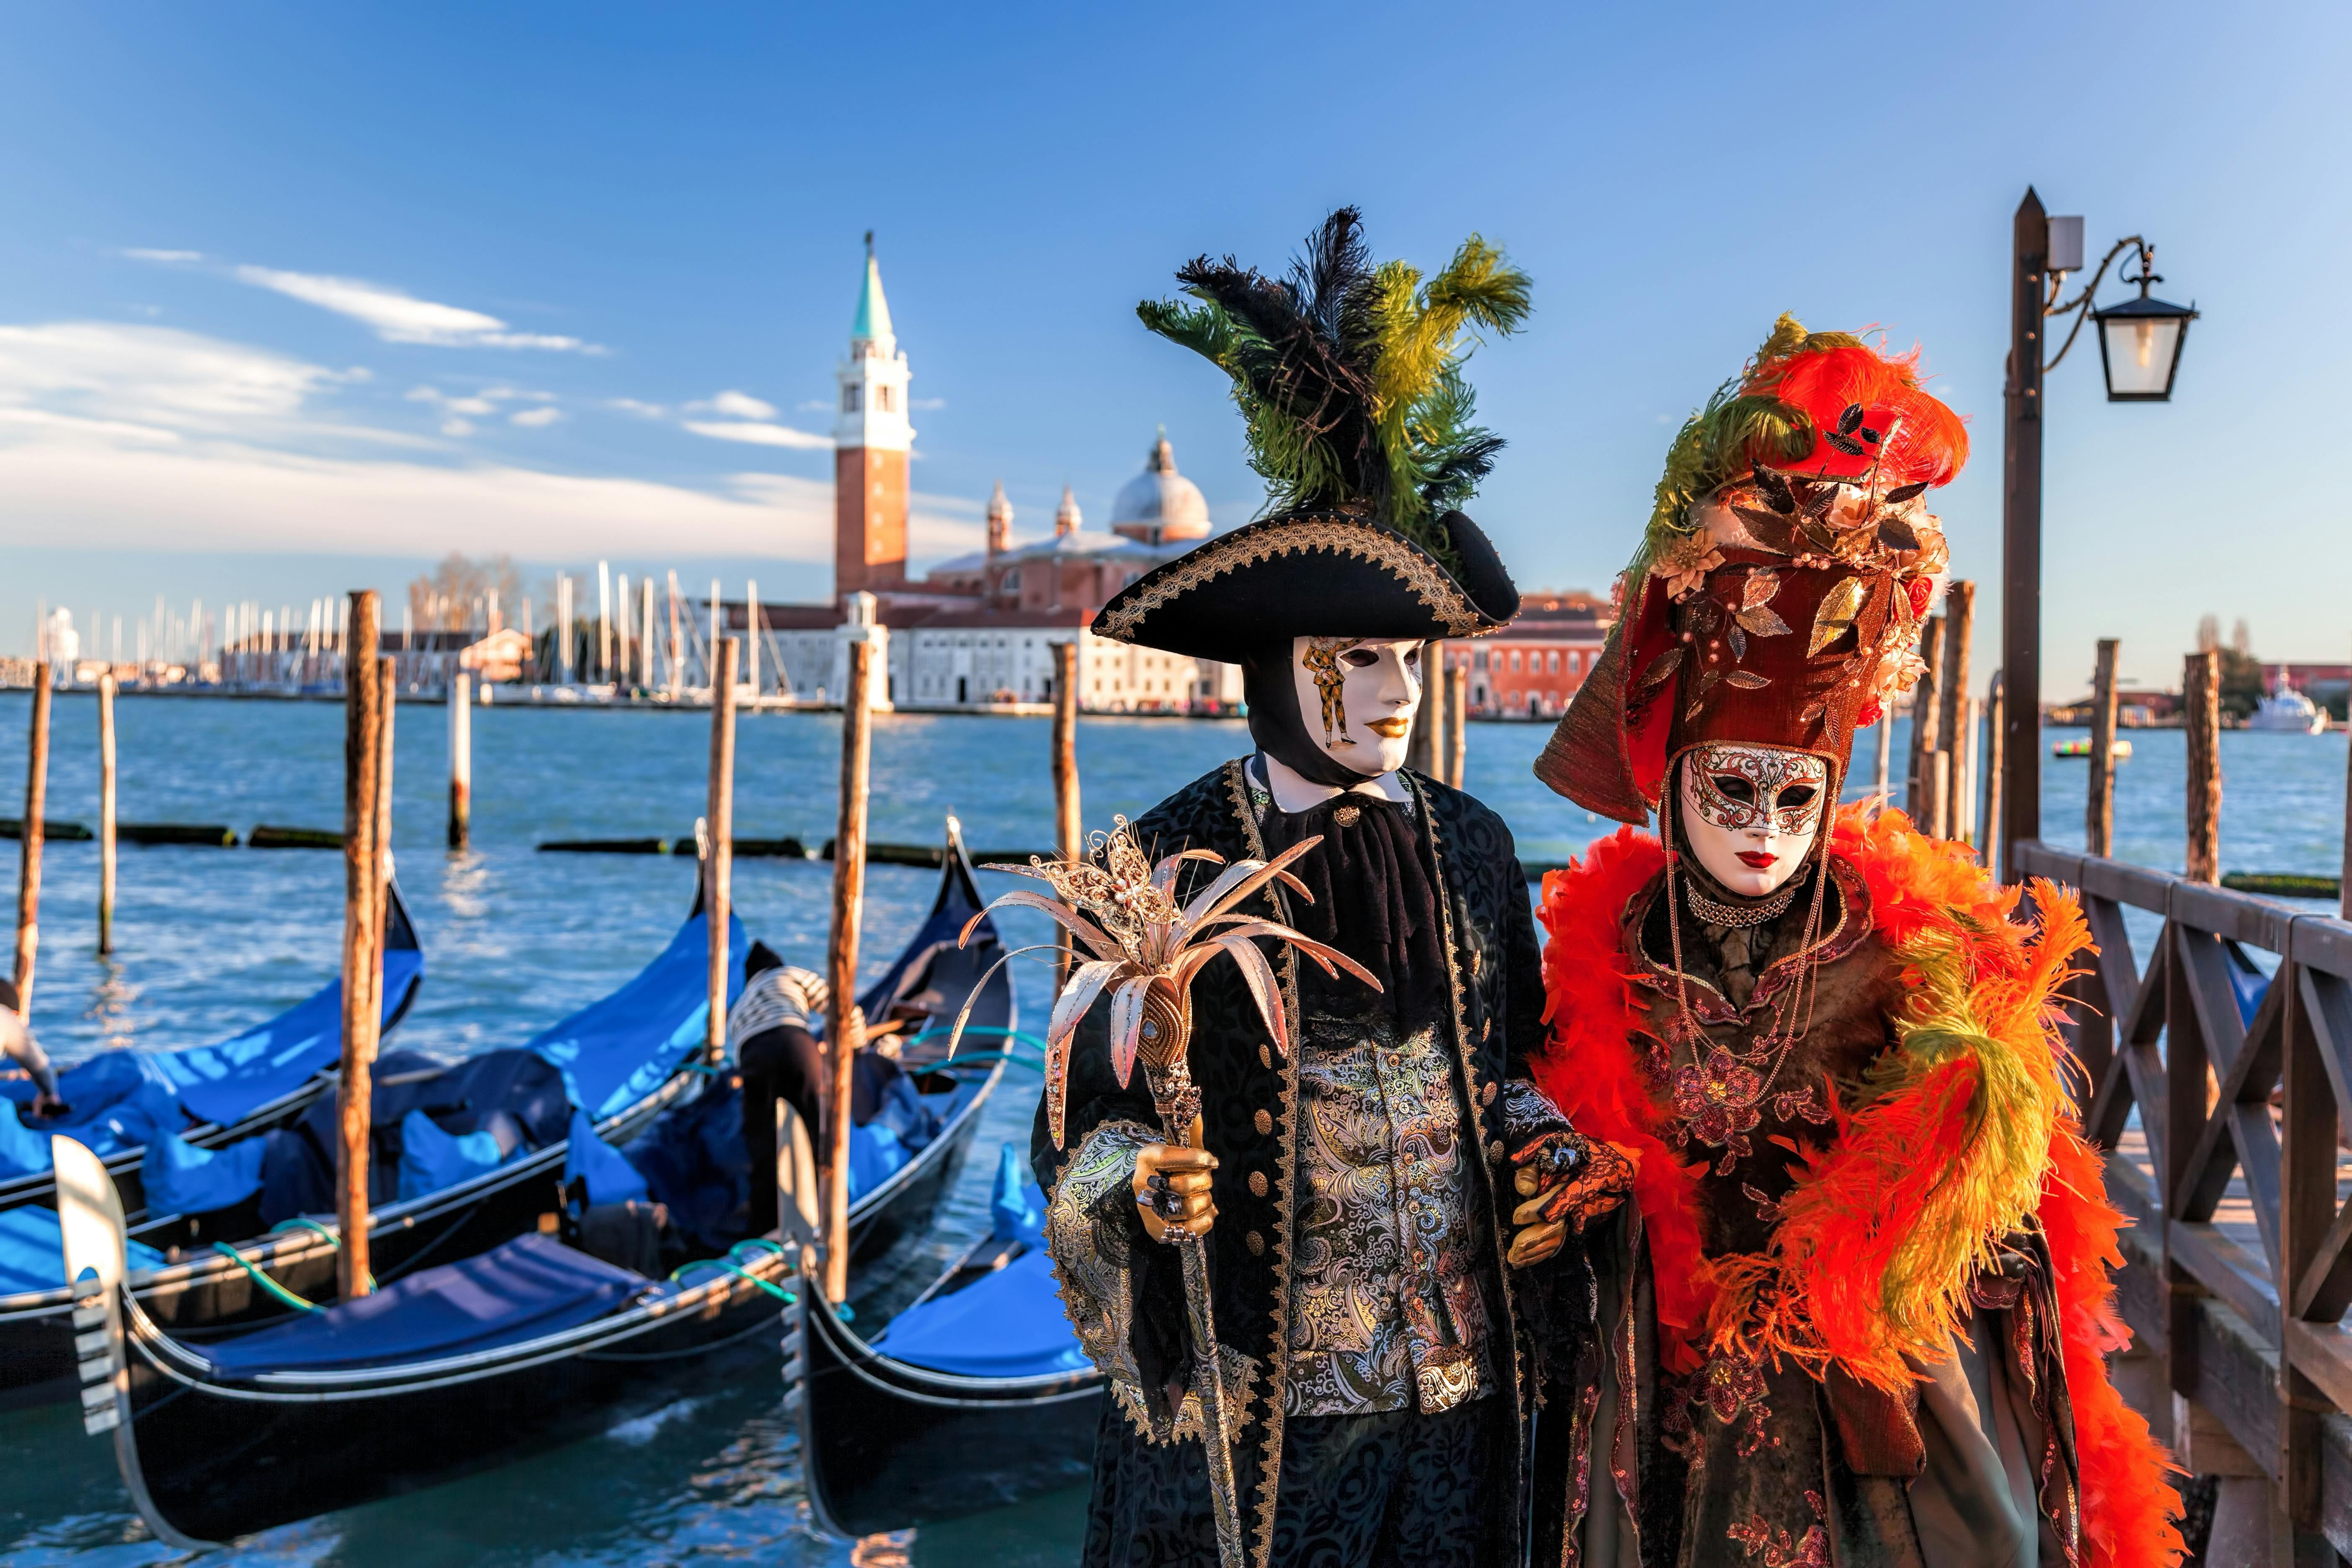 Dekorationskurs zum Bemalen Ihrer eigenen venezianische Karnevalsmaske